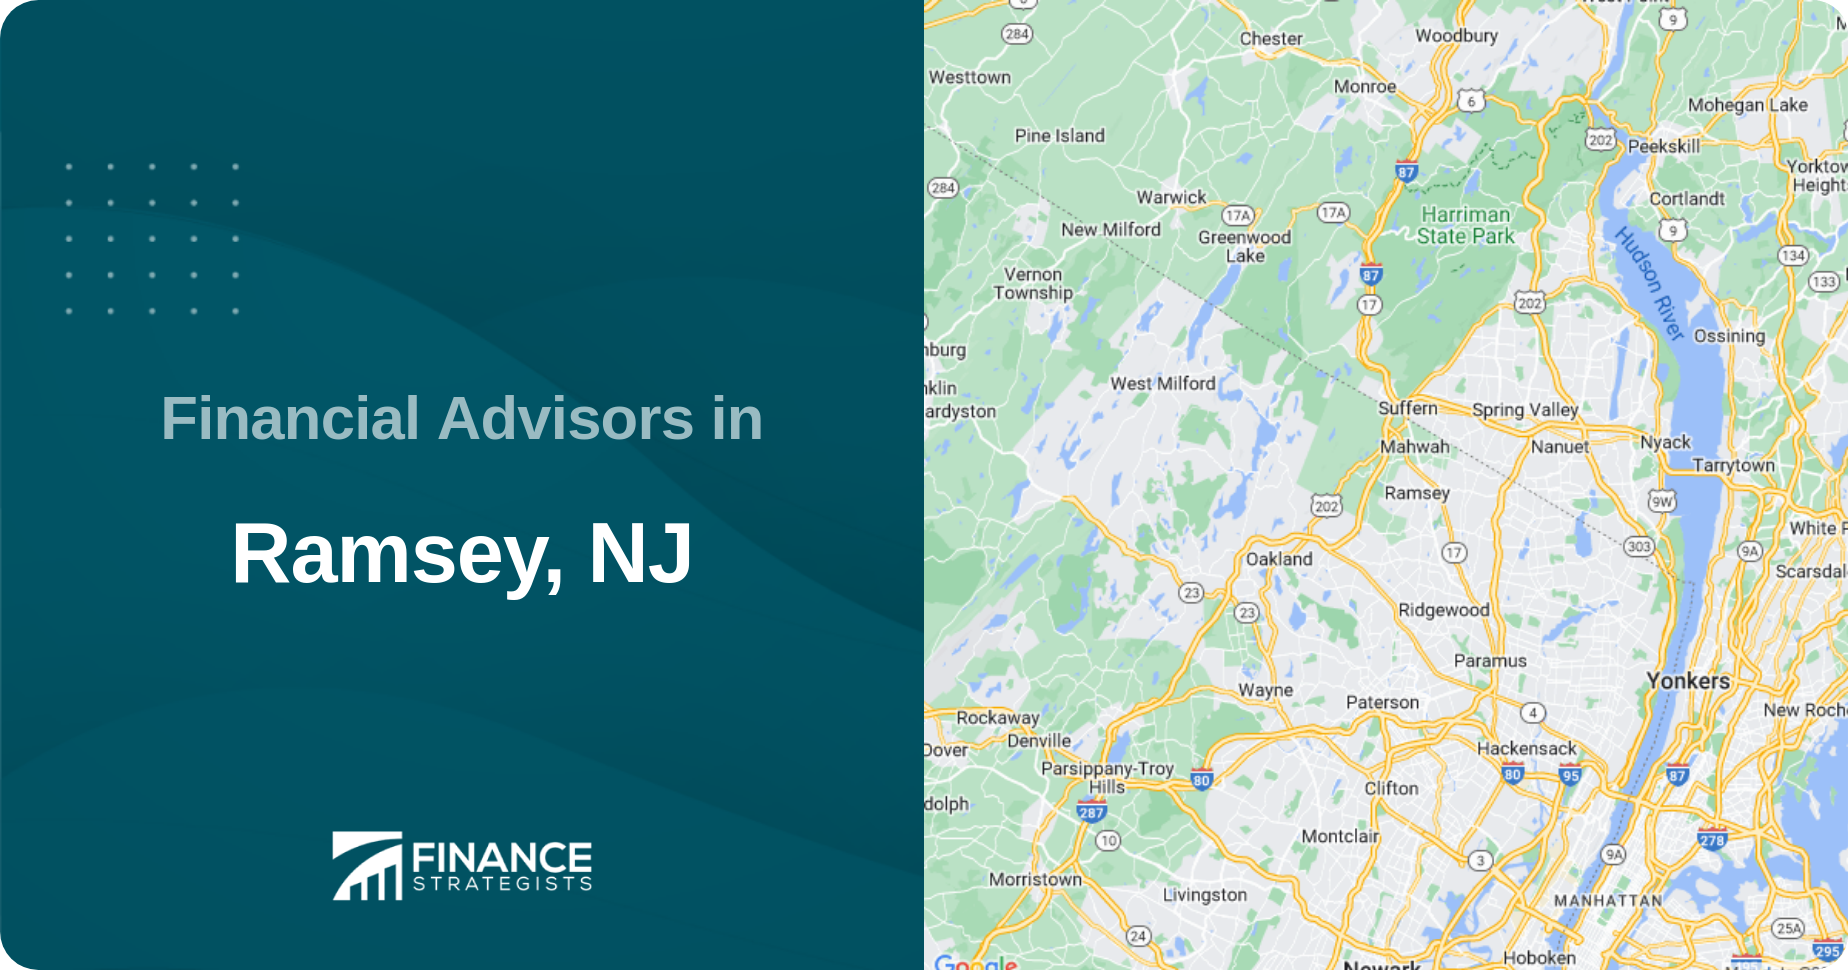 Financial Advisors in Ramsey, NJ